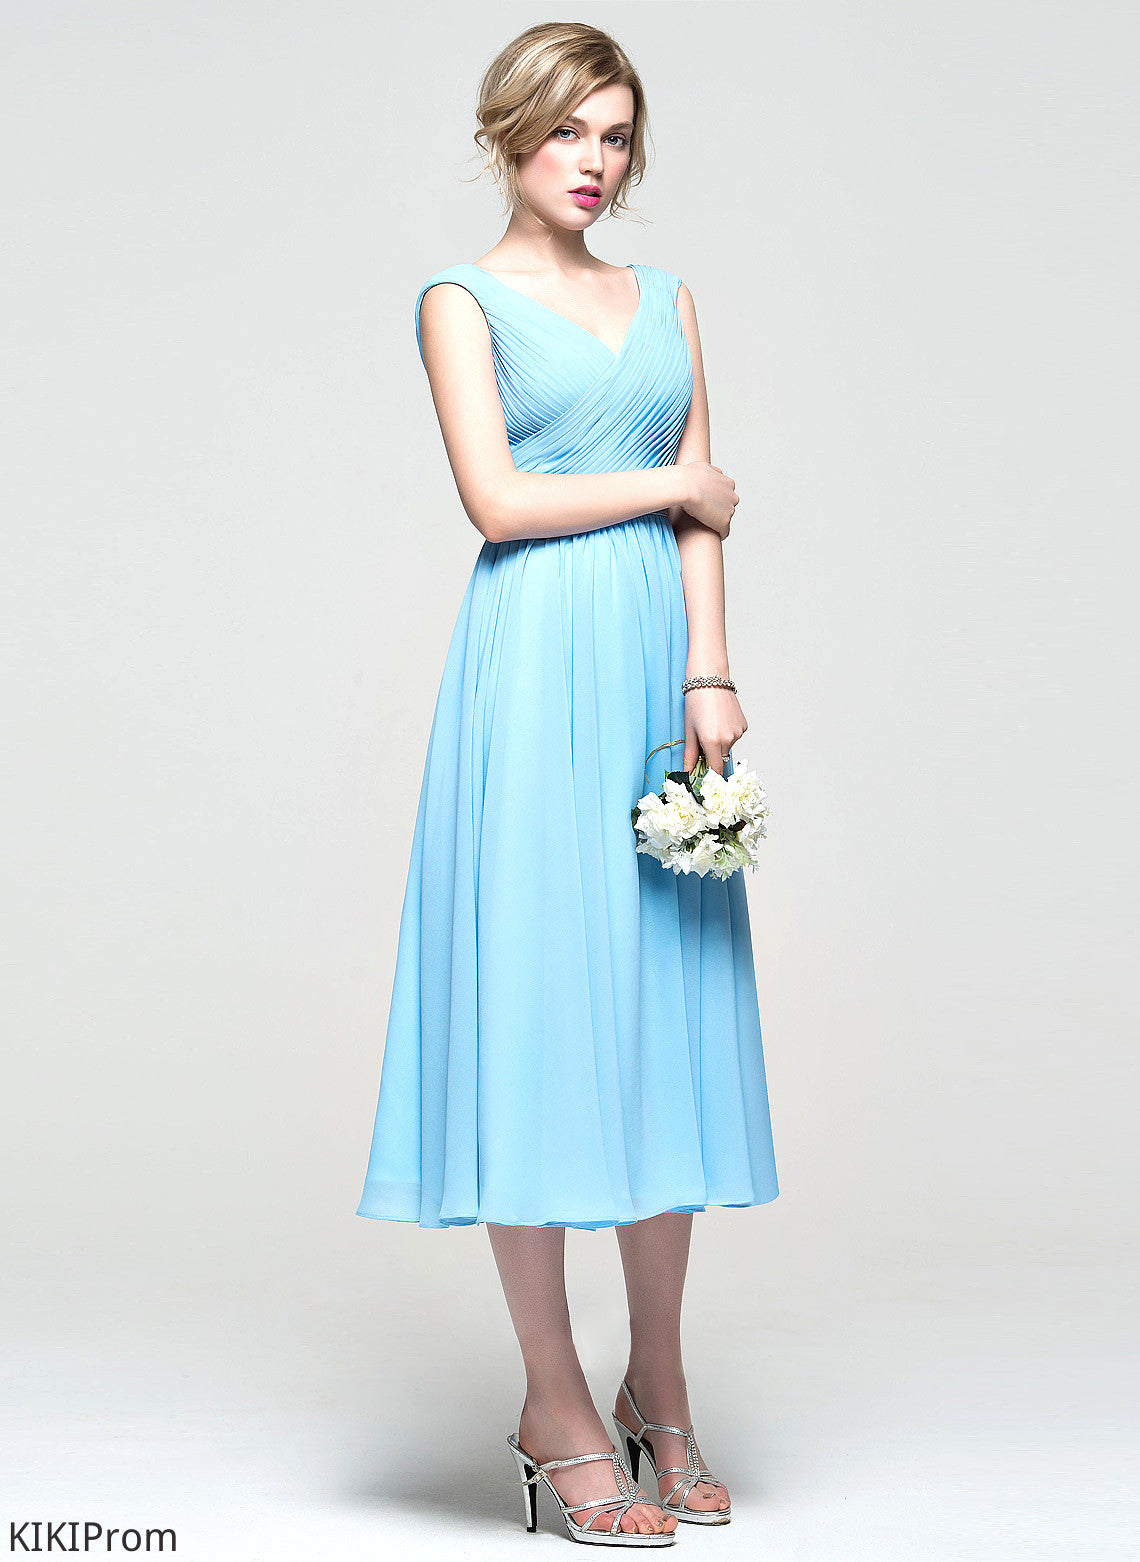 Embellishment Fabric Ruffle Neckline A-Line Length Silhouette V-neck Tea-Length Libby Bridesmaid Dresses